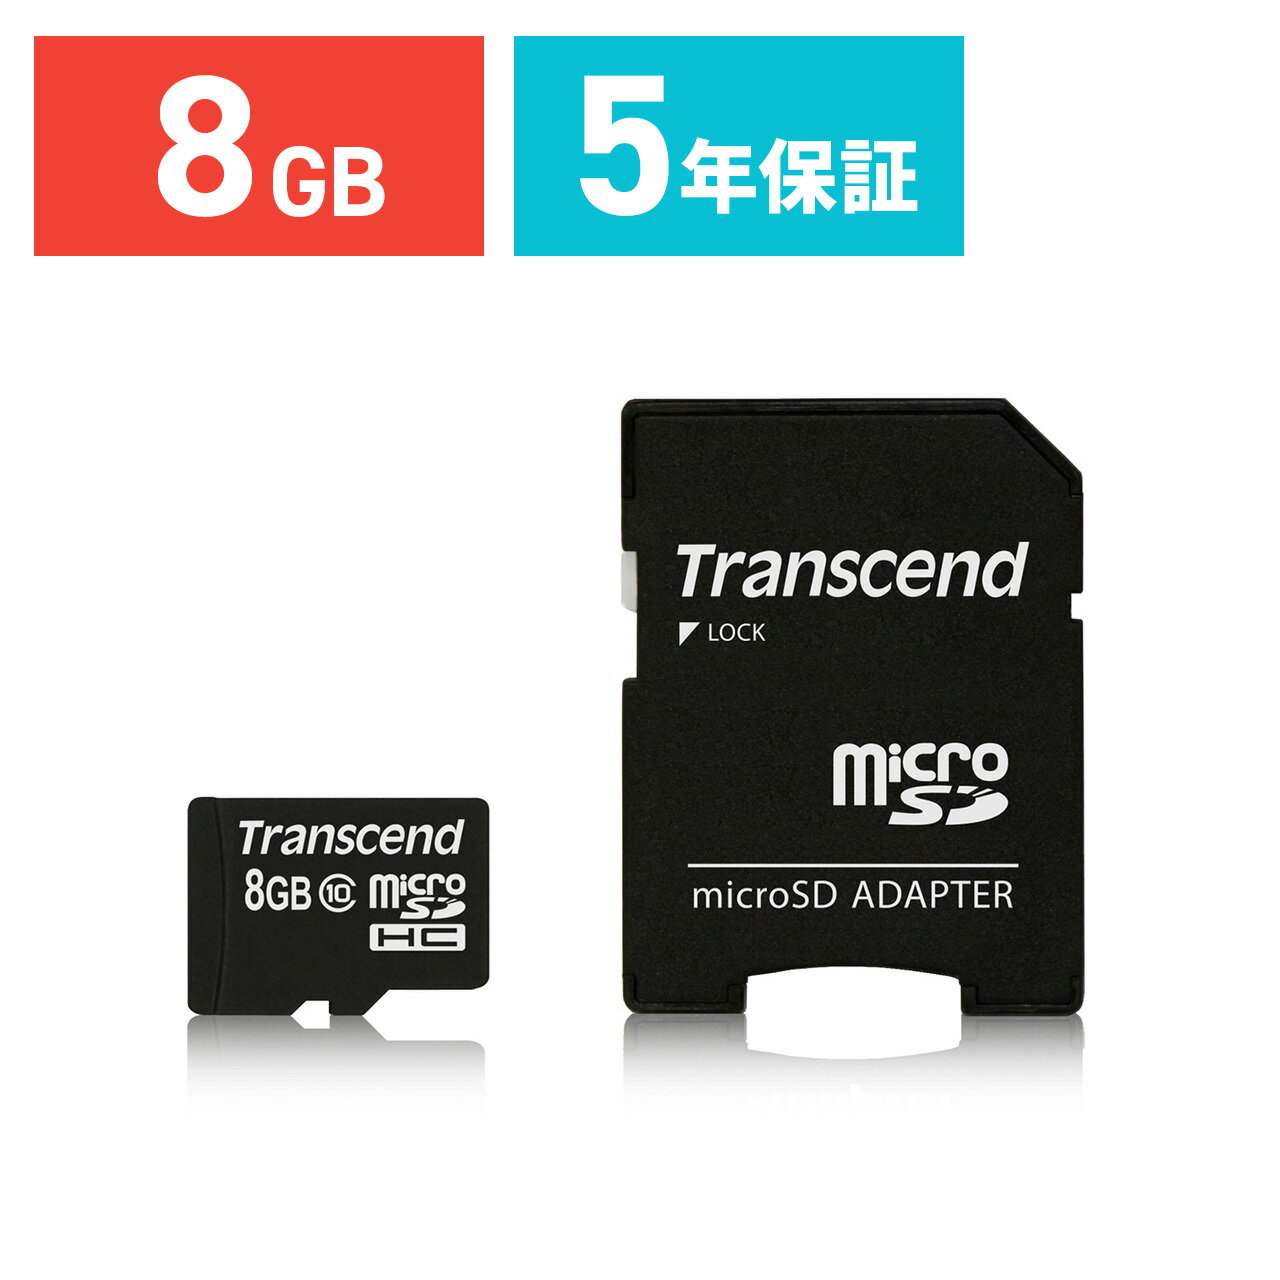 Transcend microSDカード 8GB Class10 5年保証 マイクロSD microSDHC SDアダプター付 クラス10 スマホ SD 入学 卒業